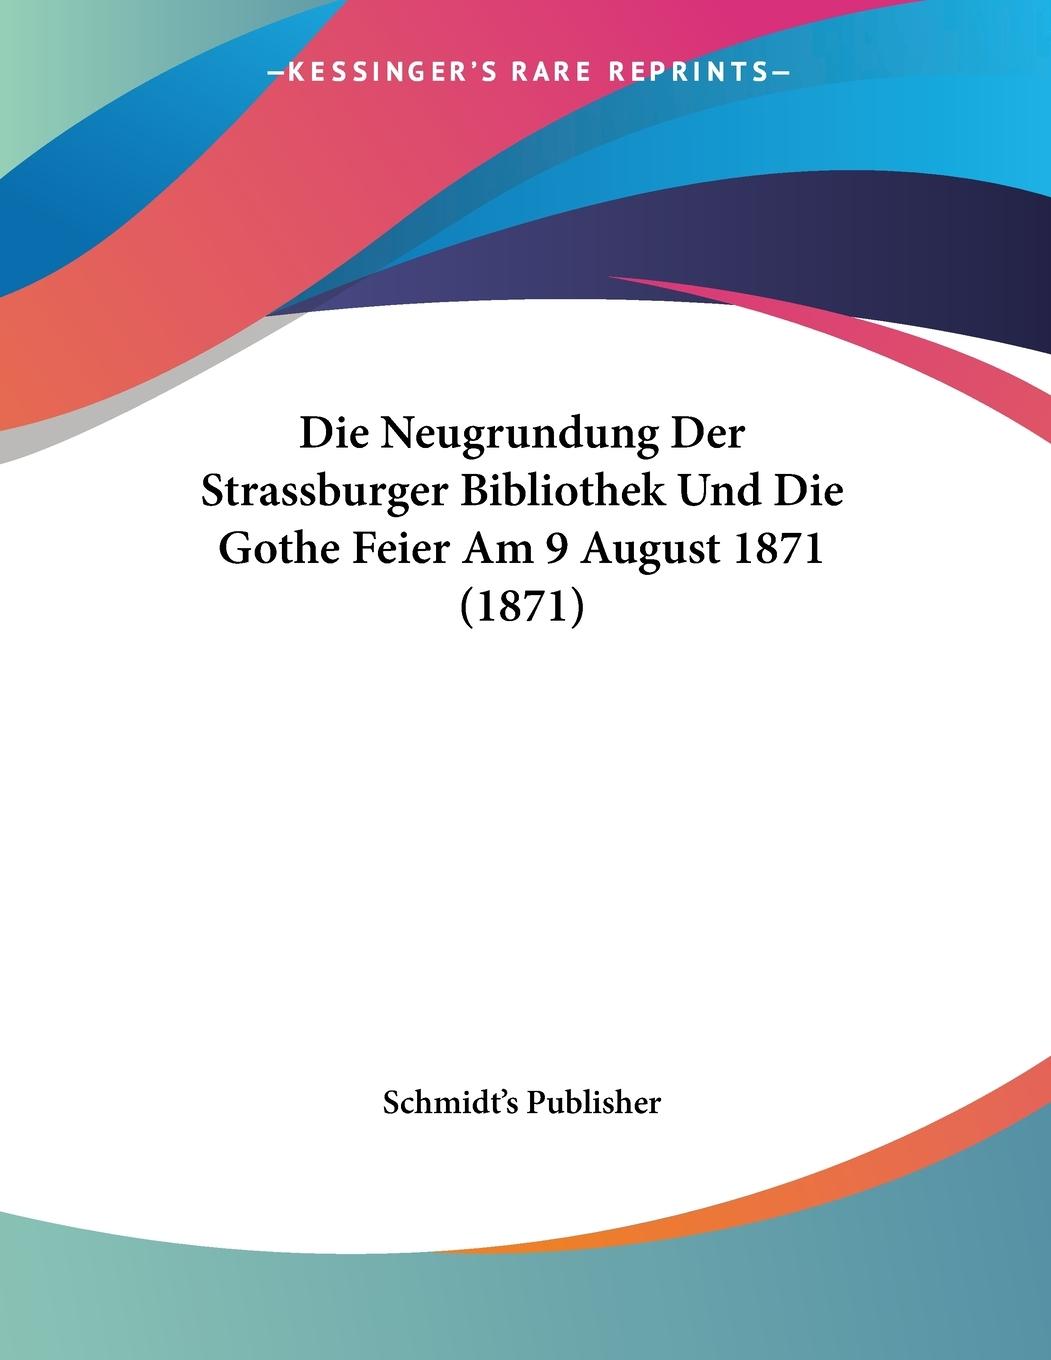 Die Neugrundung Der Strassburger Bibliothek Und Die Gothe Feier Am 9 August 1871 (1871) - Schmidt s Publisher